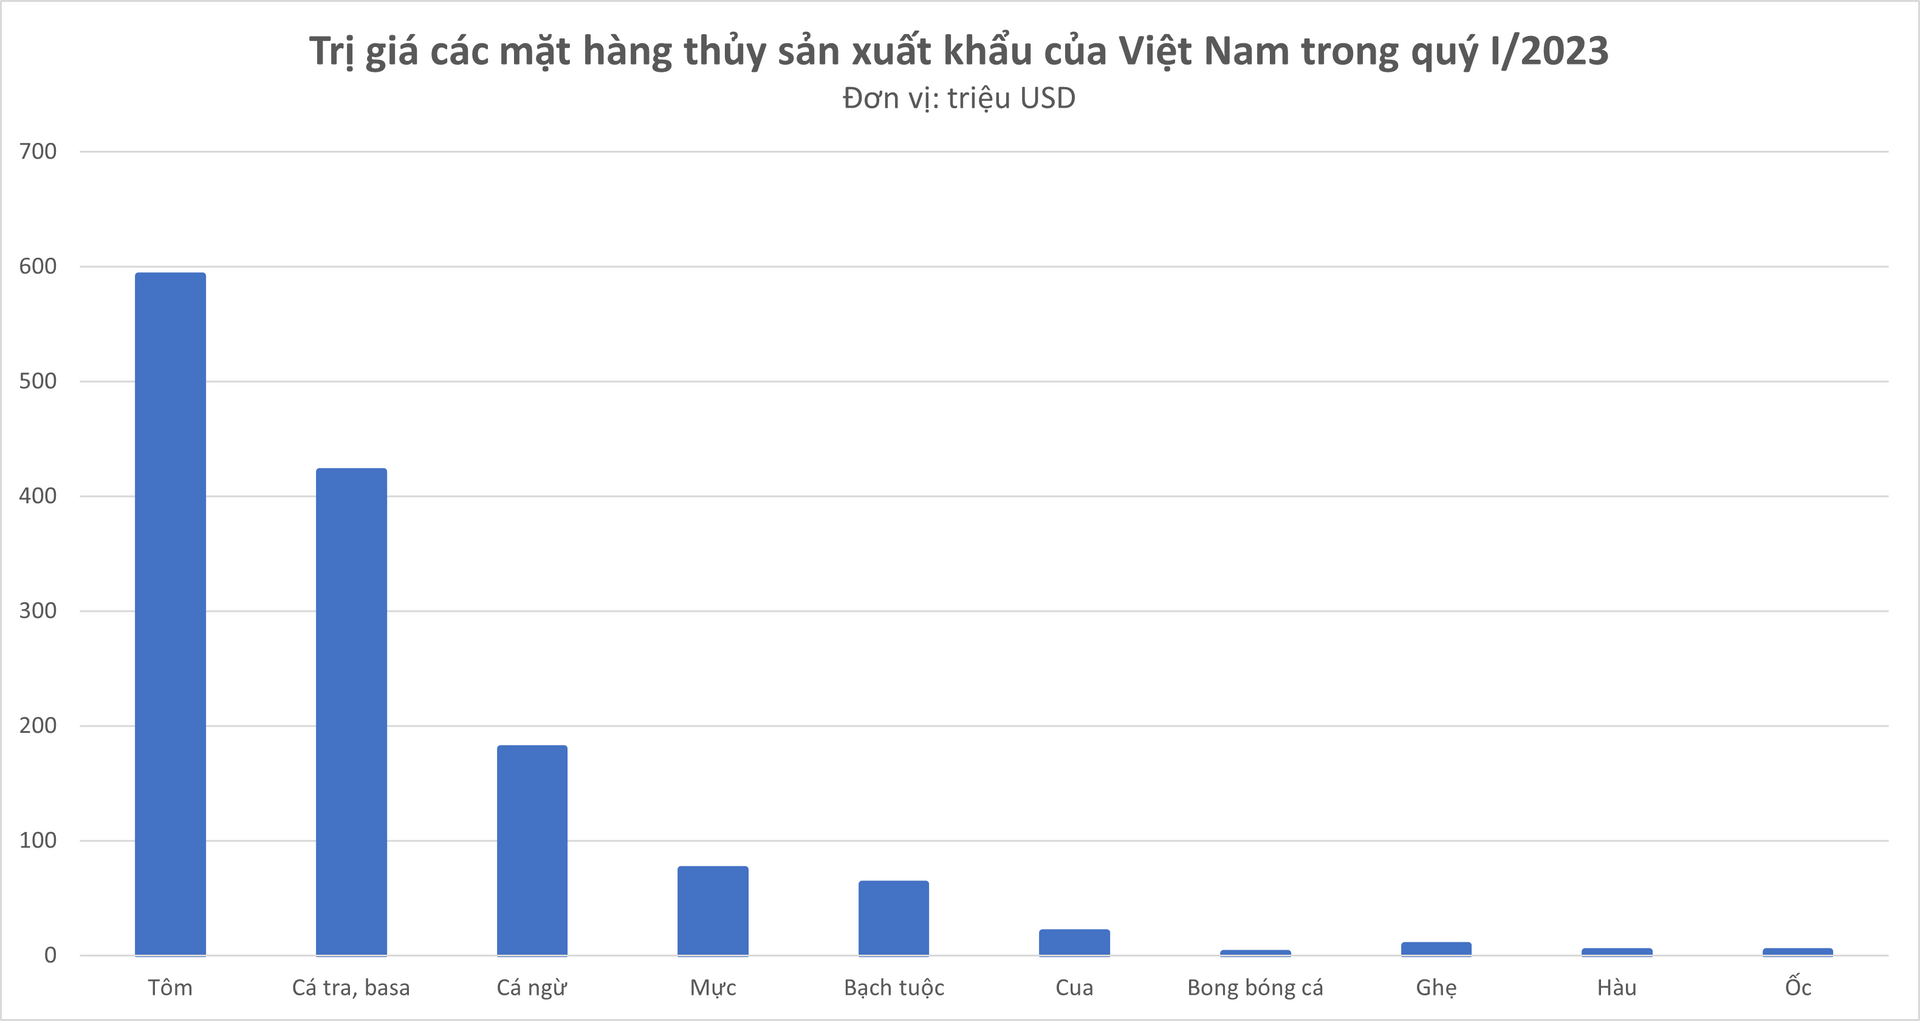 Có giá bán gần triệu một kg, phụ phẩm tưởng bỏ đi của con cá lại thu về hơn 2 triệu USD cho Việt Nam trong quý I/2023 - Ảnh 1.